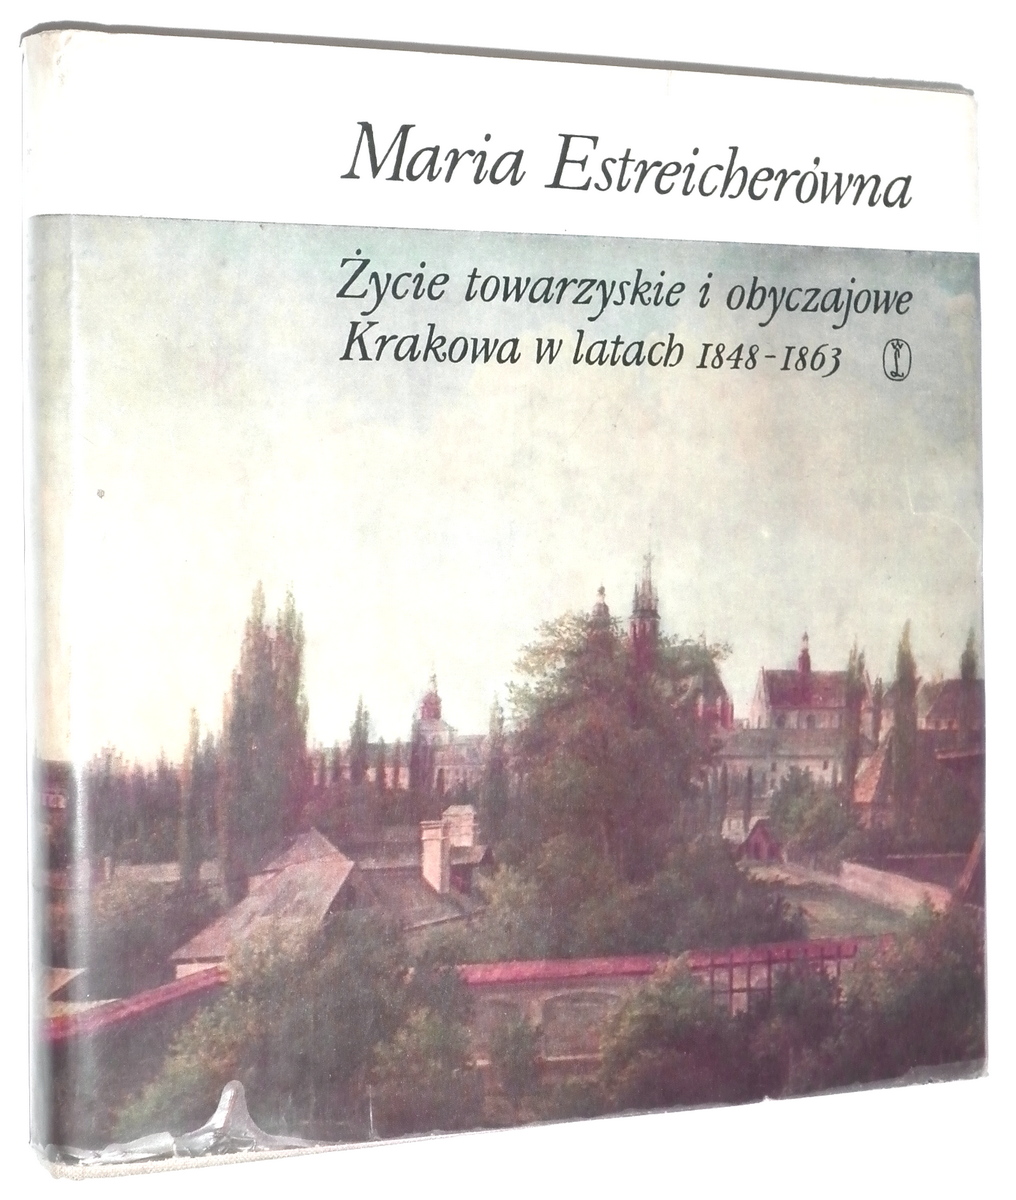 ŻYCIE TOWARZYSKIE i OBYCZAJOWE KRAKOWA w LATACH 1848-1863 - Estreicherówna, Maria